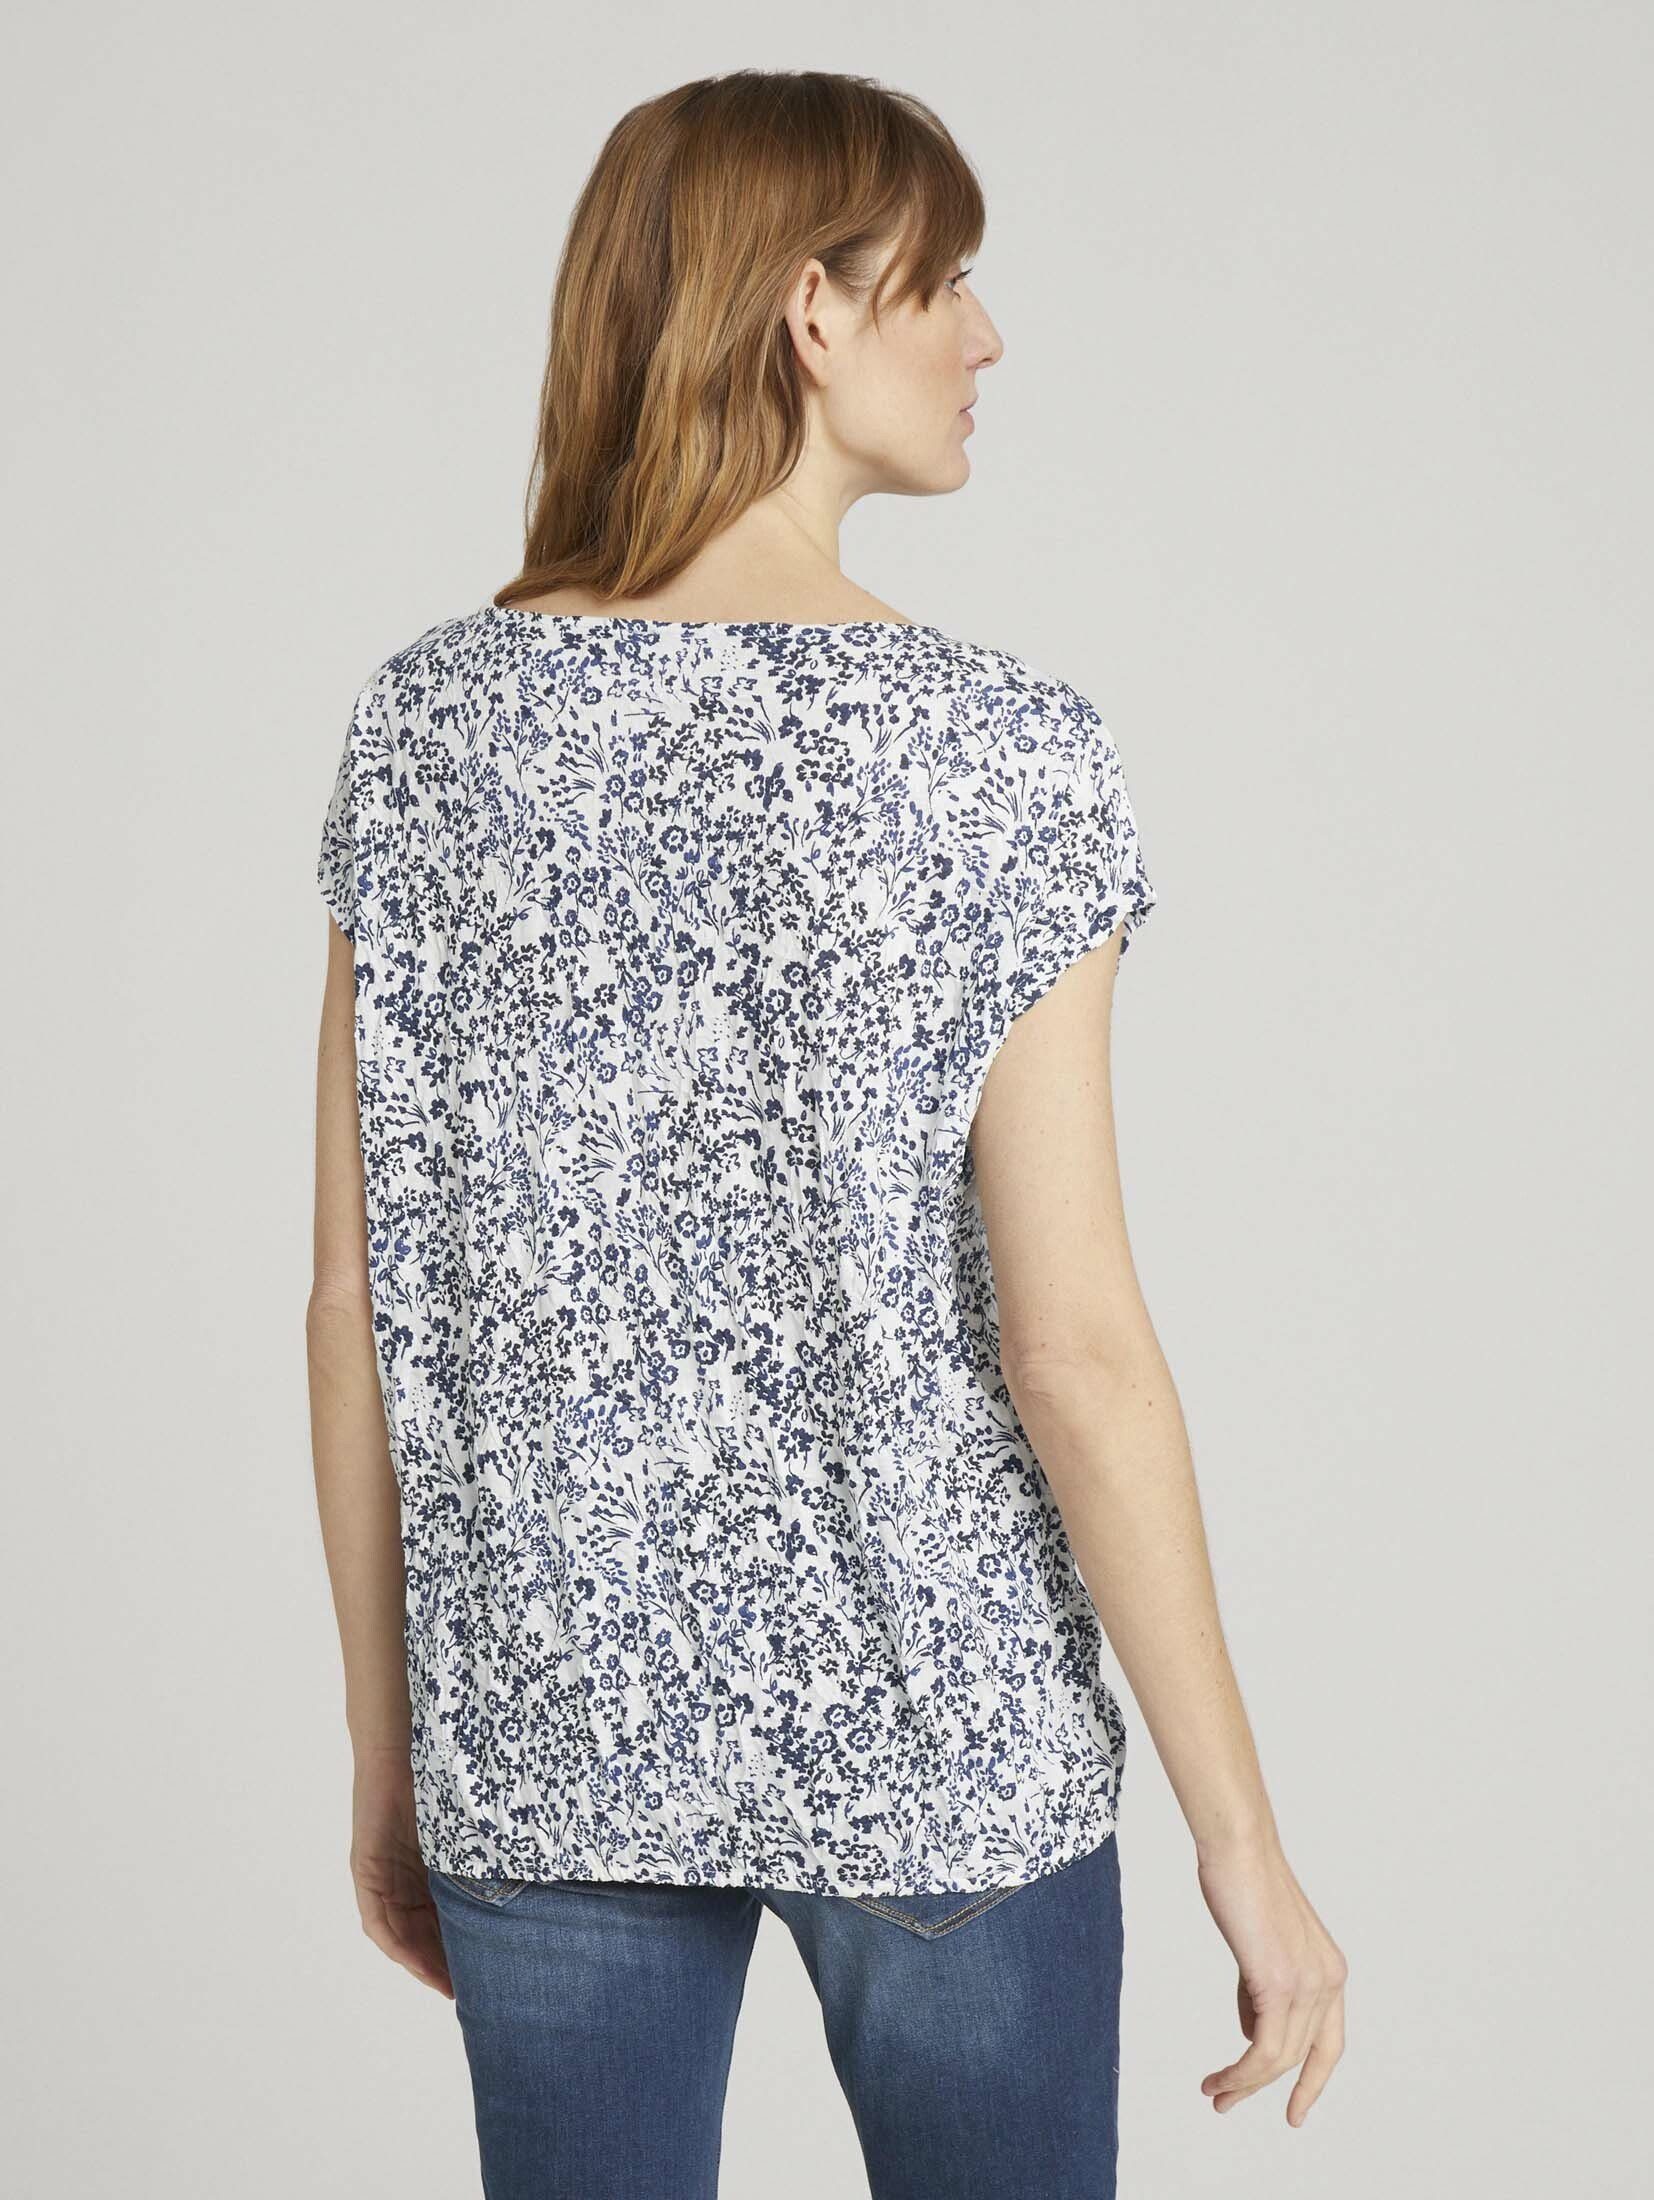 TOM TAILOR design Knitteroptik flower offwhite in Elastisches T-Shirt T-Shirt